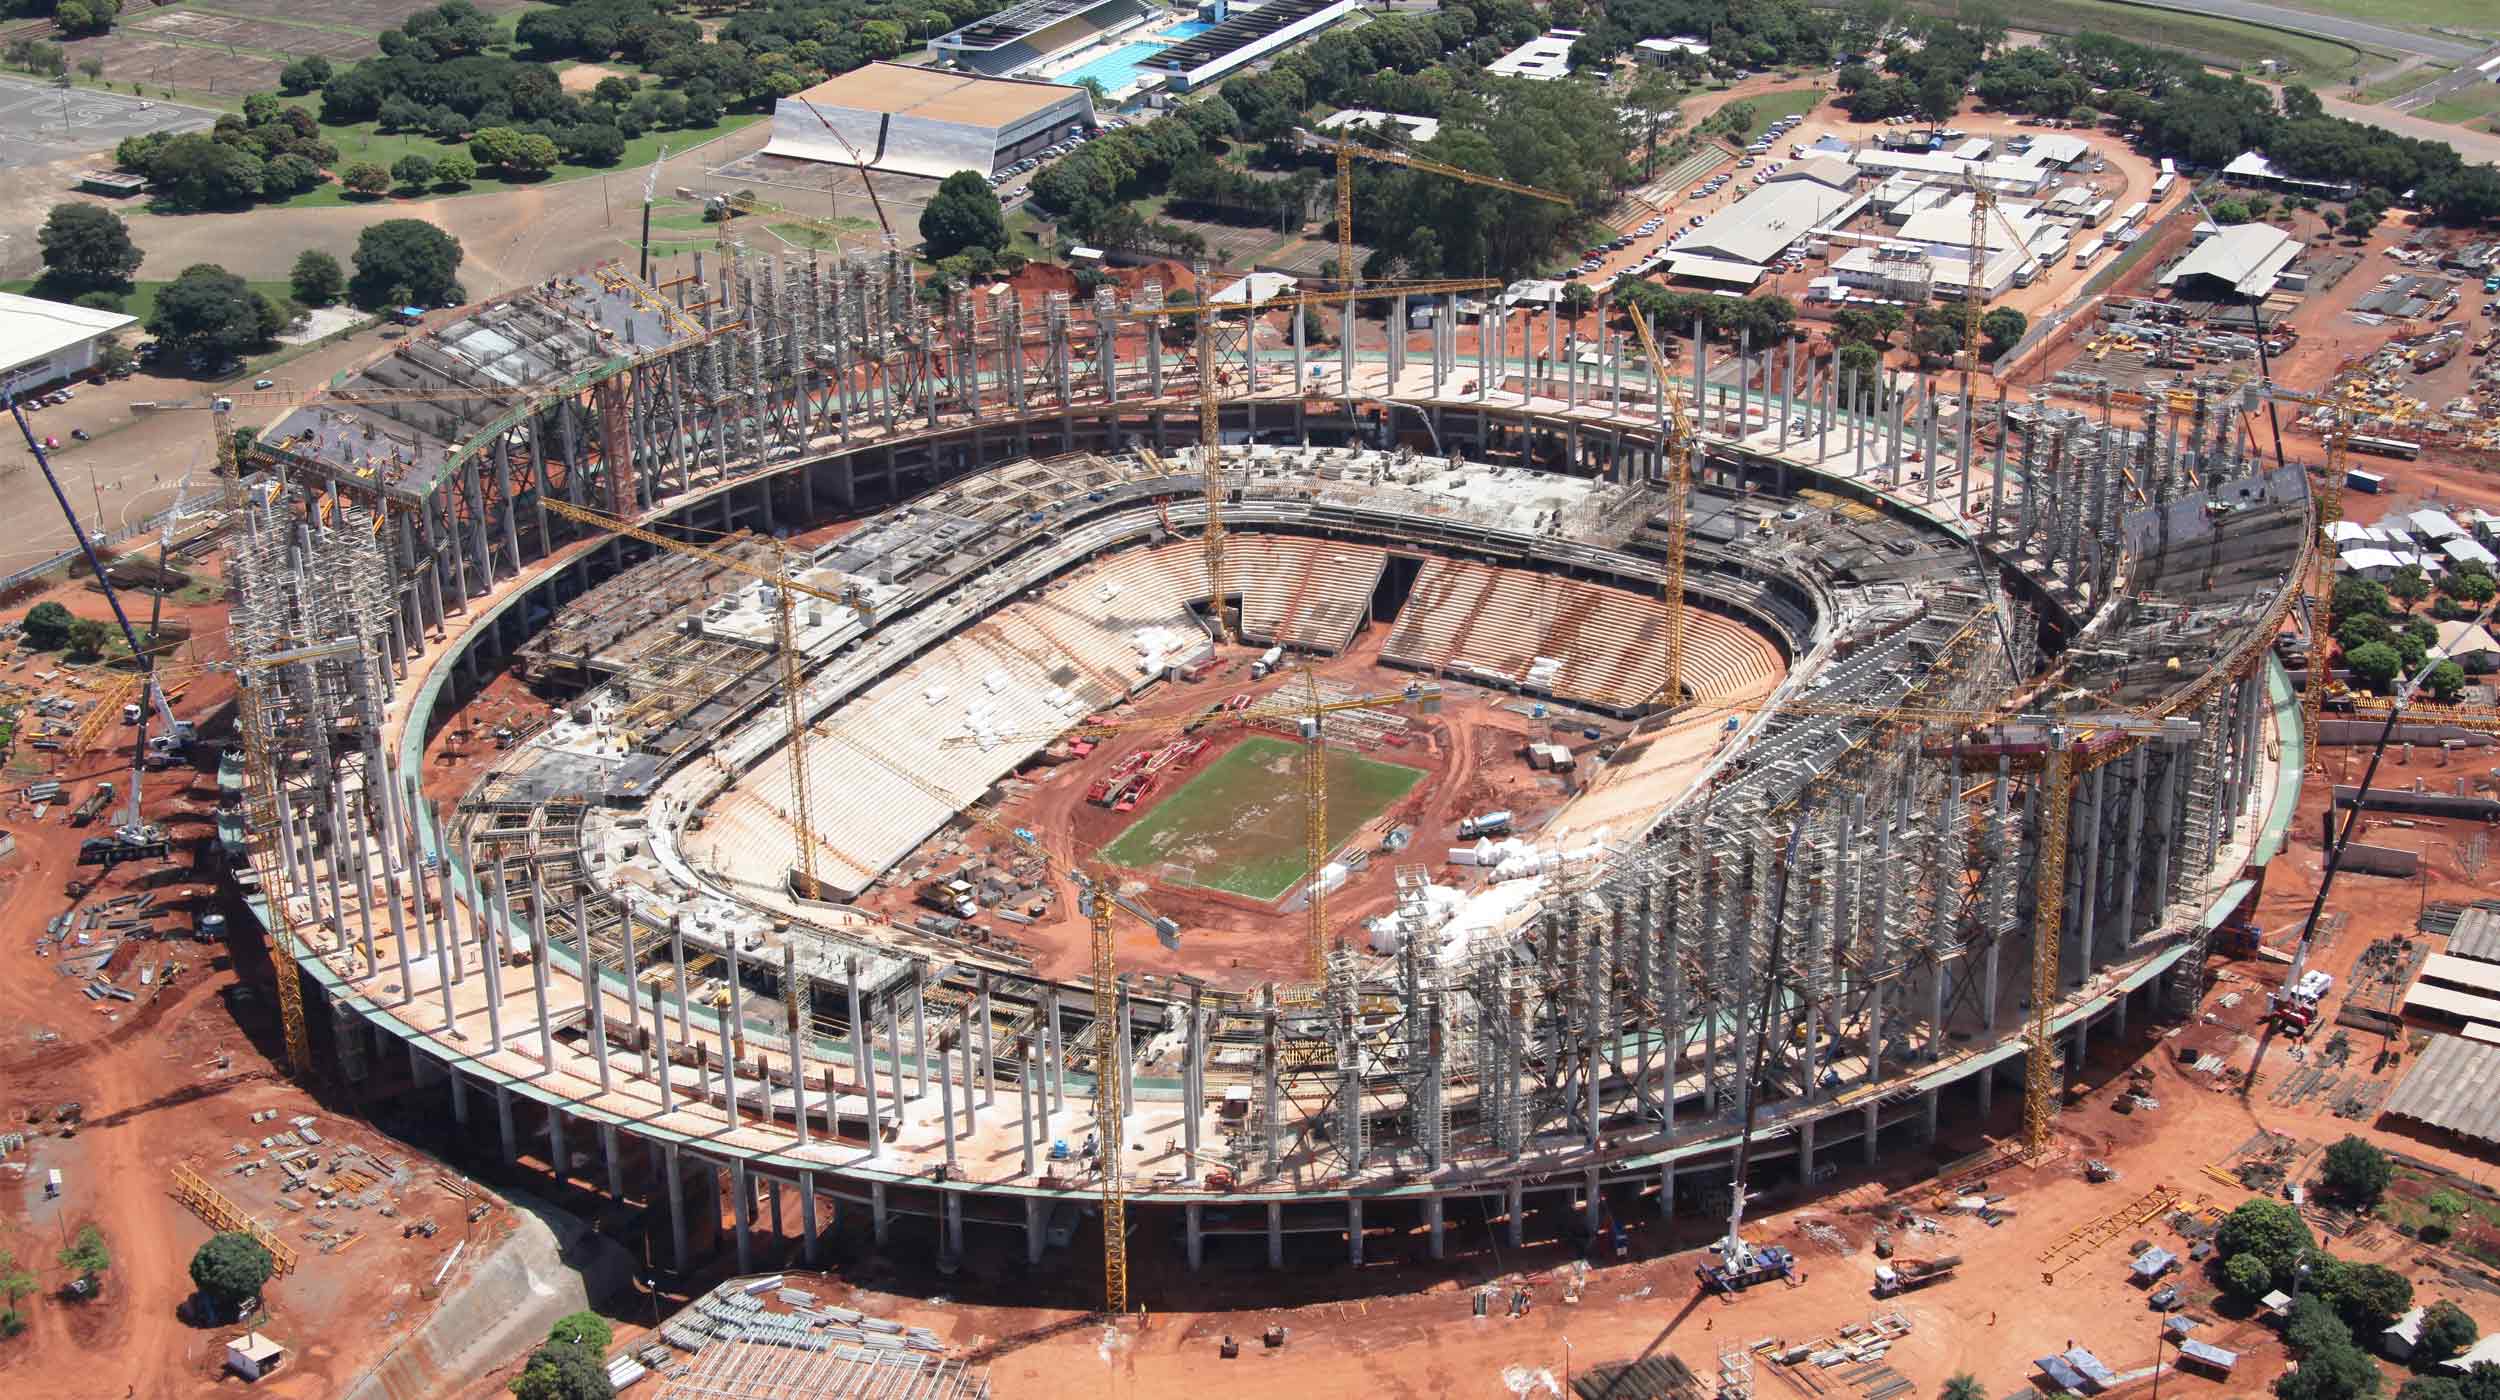 El más conocido como Mané Garrincha, es una de las sedes principales del Mundial de fútbol de 2014.